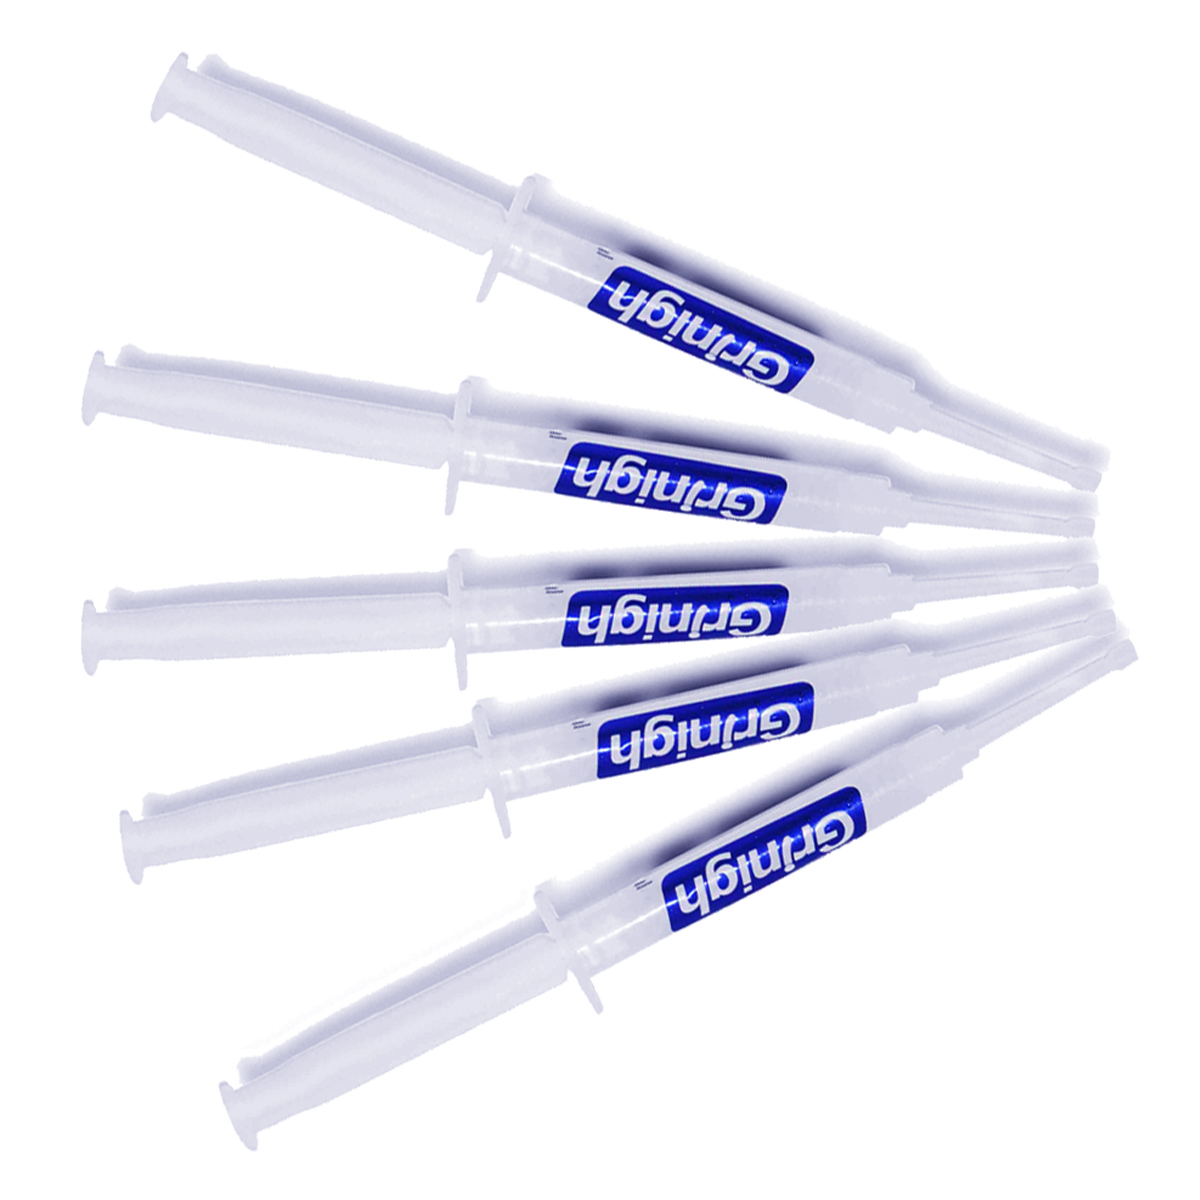 Grin365 Dentes de 3 ml seringas substituição Whitening gel para Whitening Sistema - Reabastecer Kit com mais de 15 tratamentos